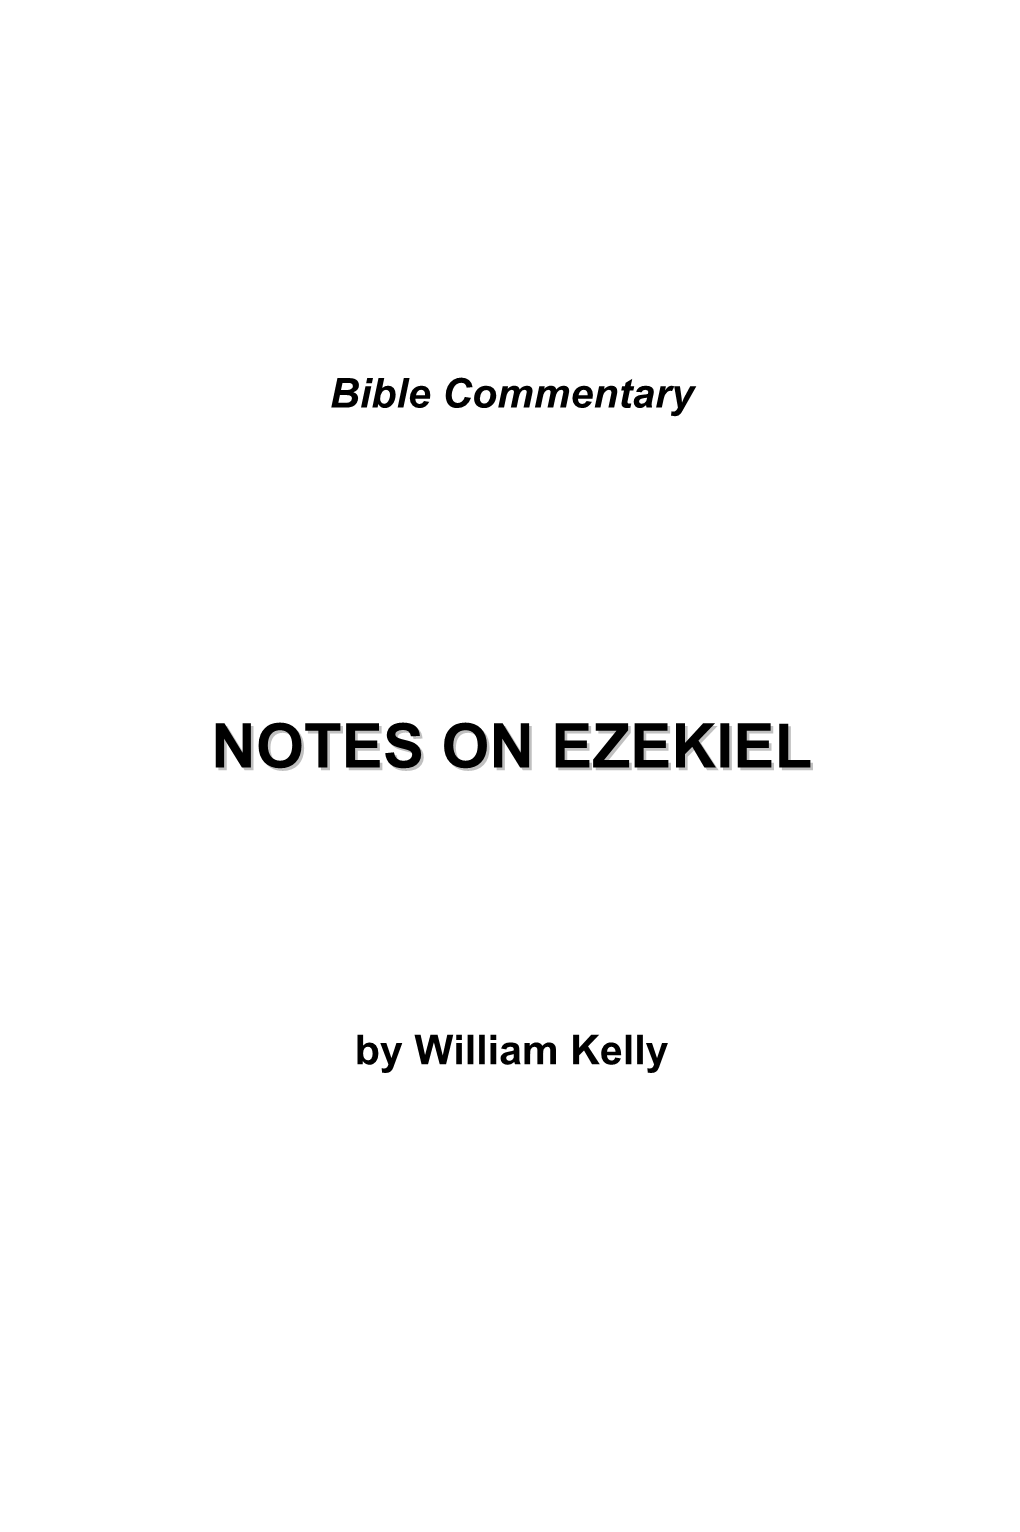 Notes on Ezekiel